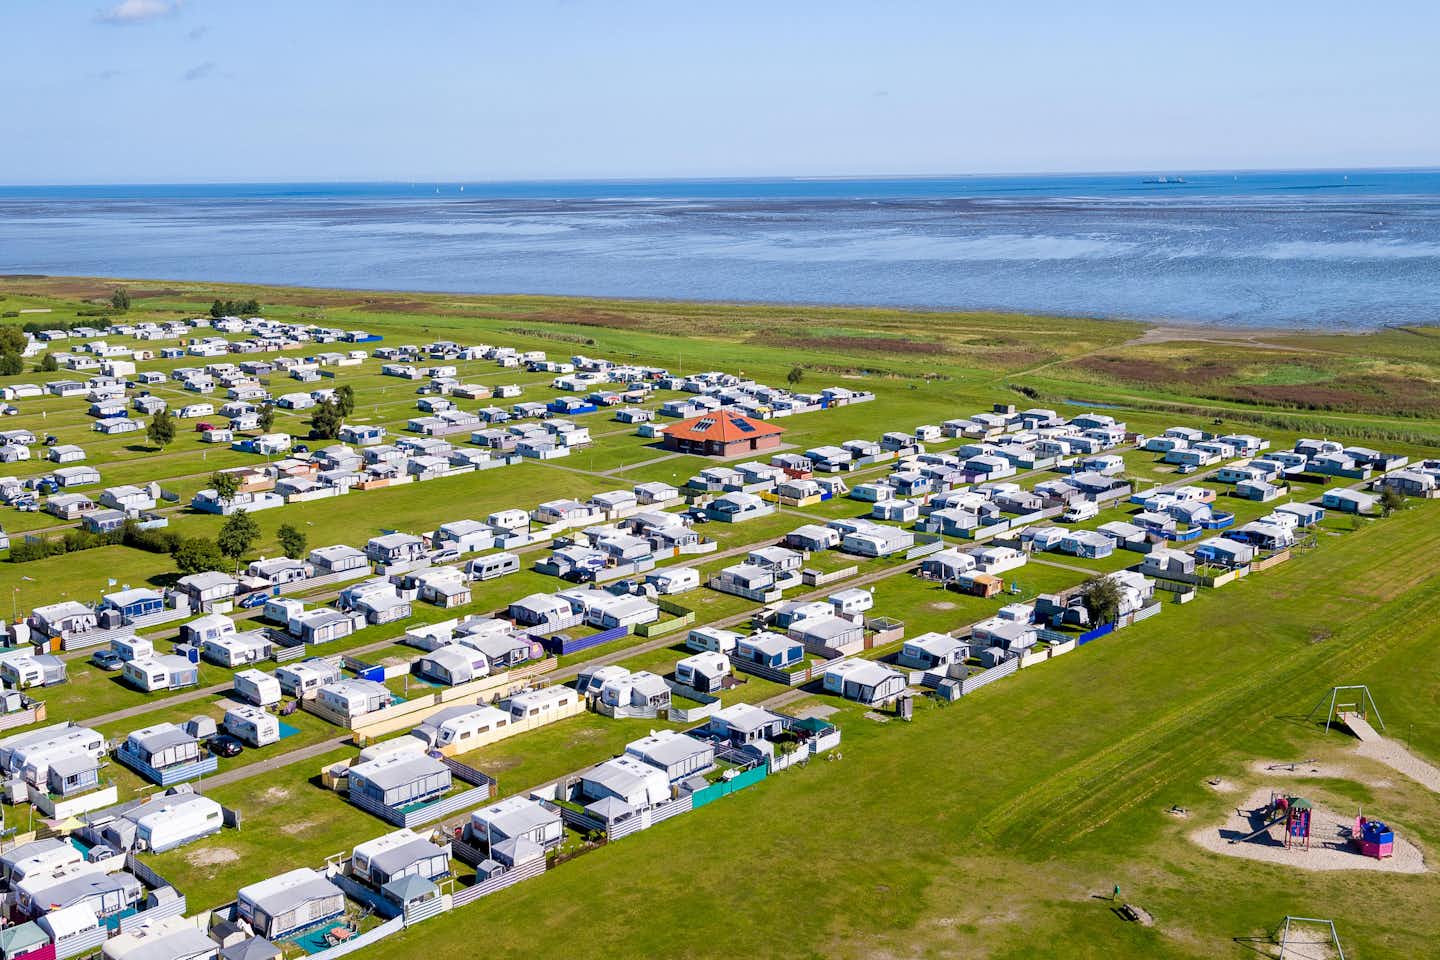 Campingplatz Hooksiel - Luftaufnahme vom Campingplatz mit Spielplatz an der Nordsee